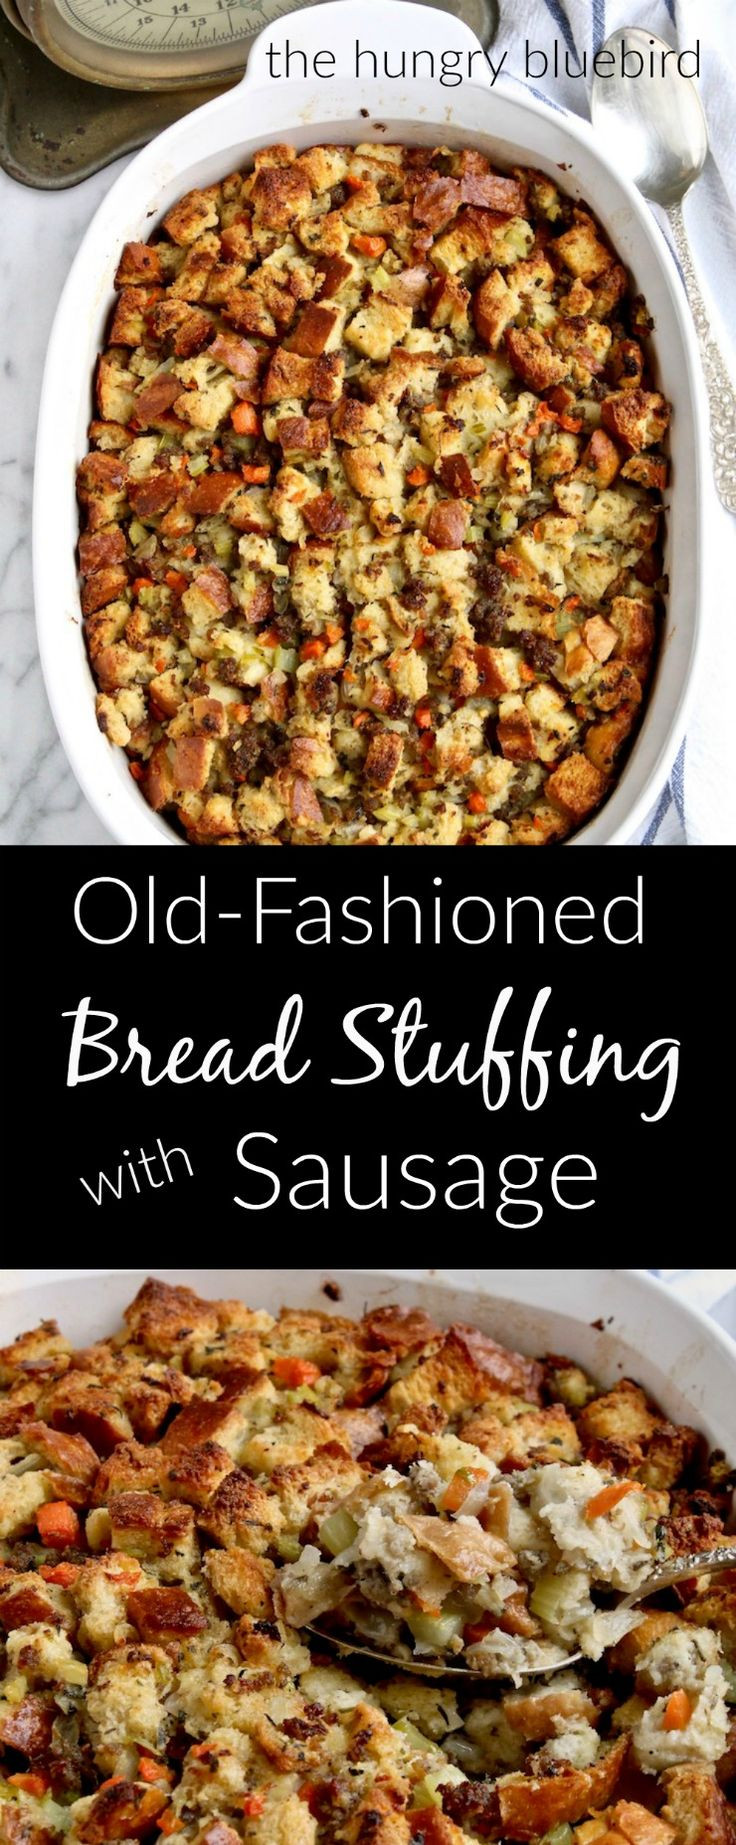 Turkey Sausage Stuffing Recipes Thanksgiving
 Best 25 Thanksgiving recipes ideas on Pinterest